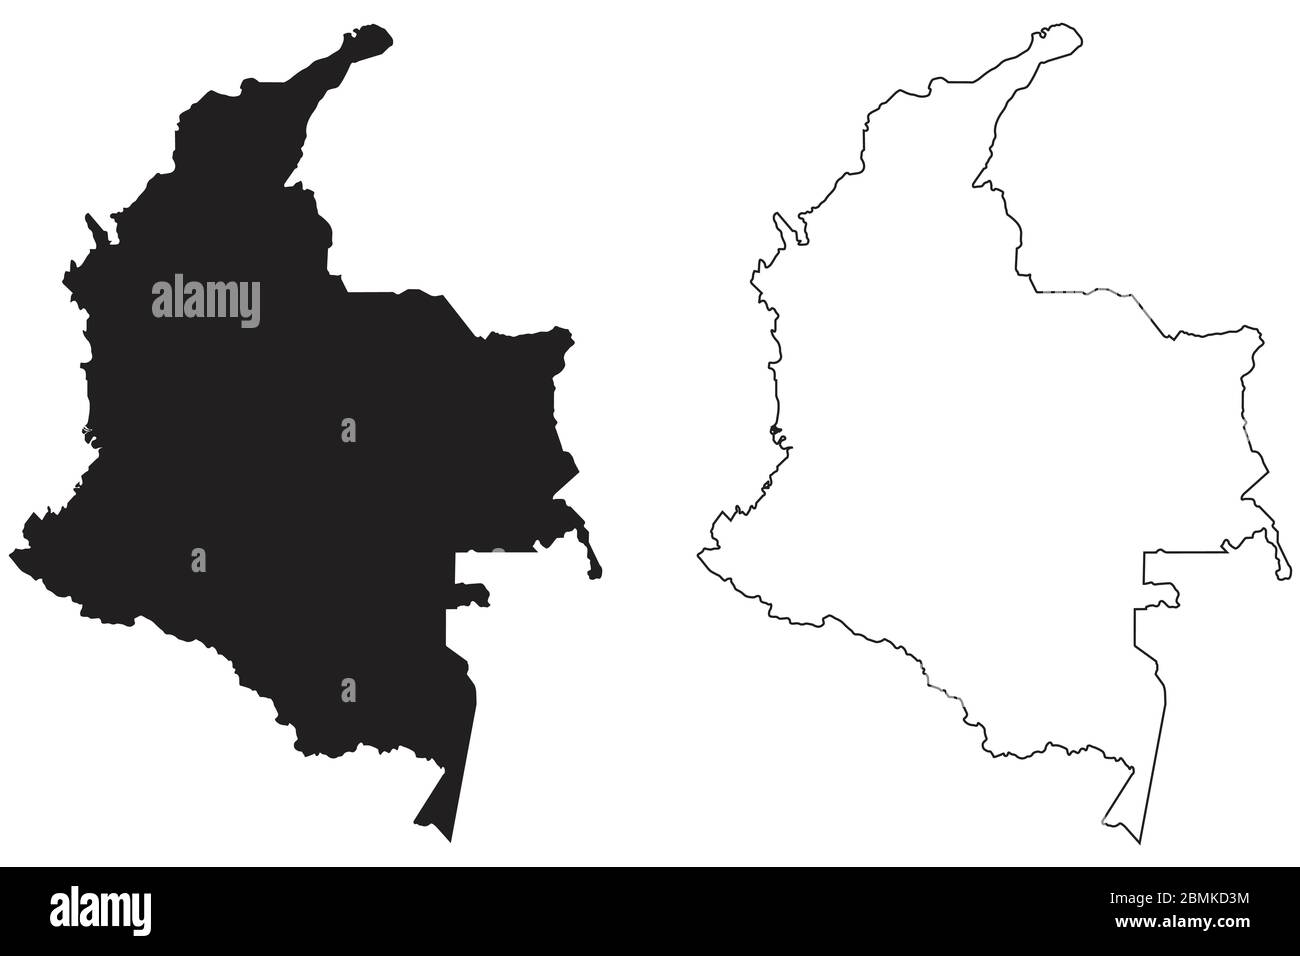 Carte de la Colombie. Silhouette et contour noirs isolés sur fond blanc. Vecteur EPS Illustration de Vecteur